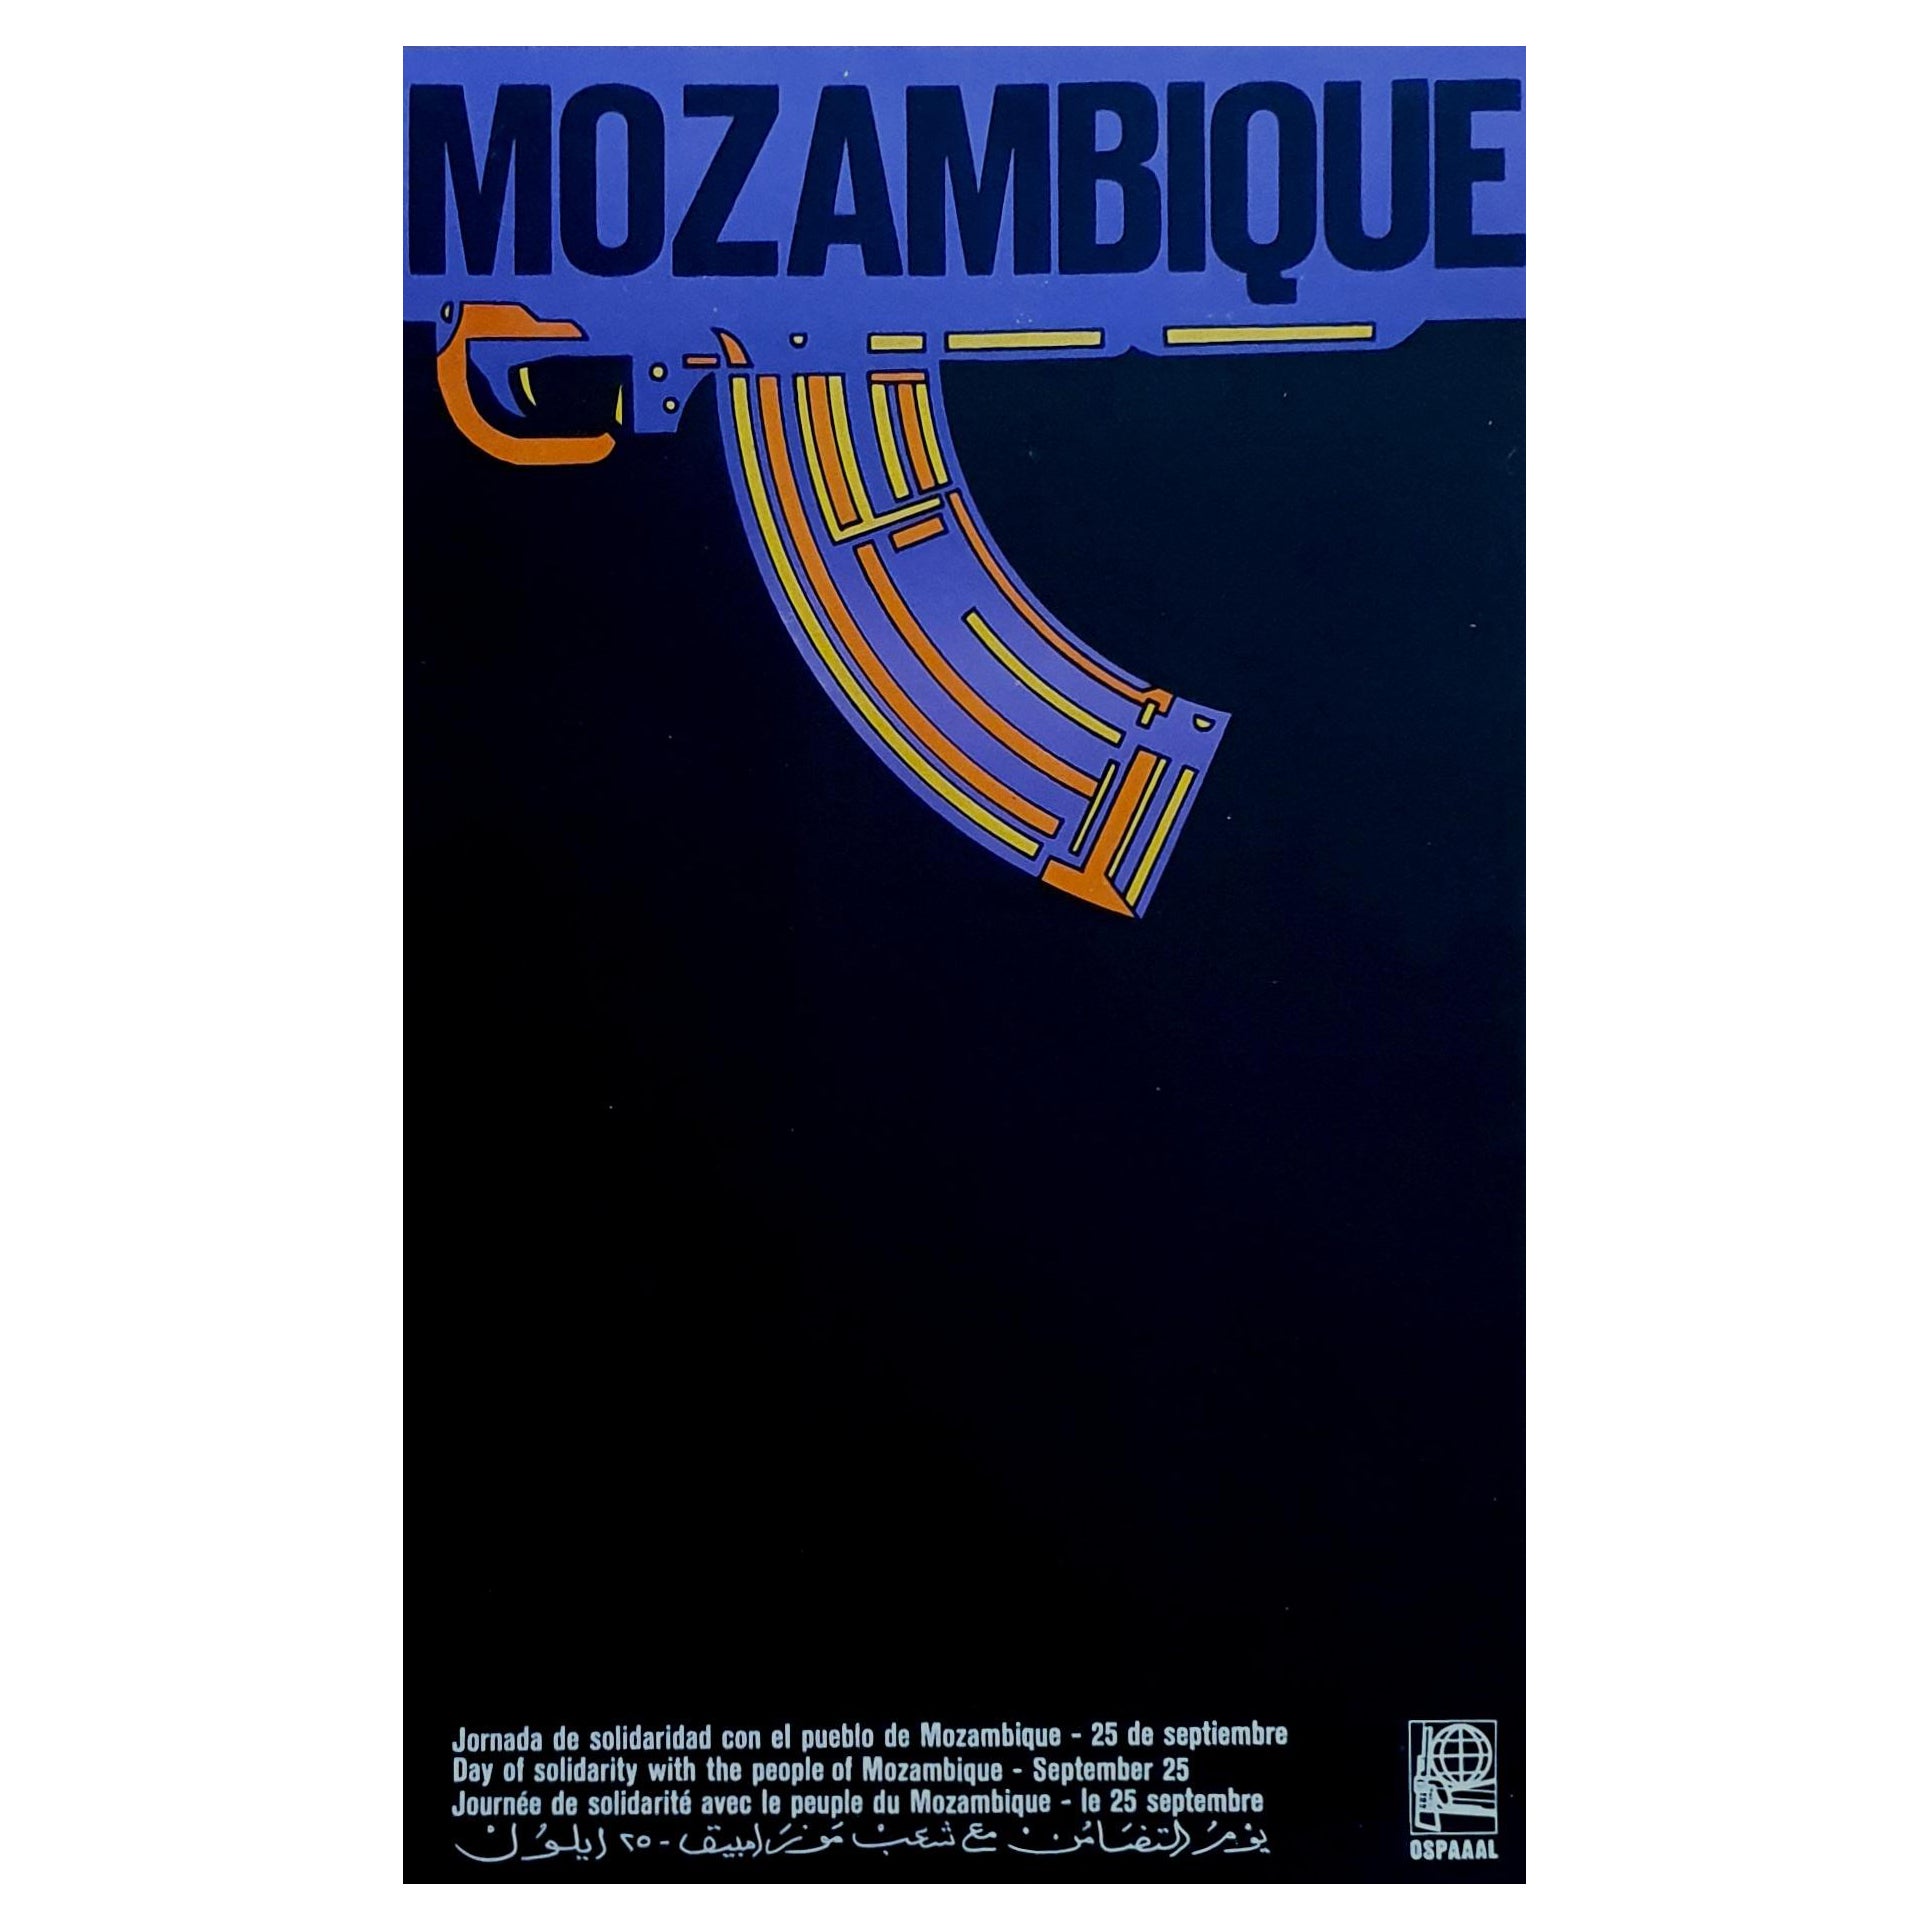 Originales opsaaal Mozambique-Poster im Vintage-Stil 1969